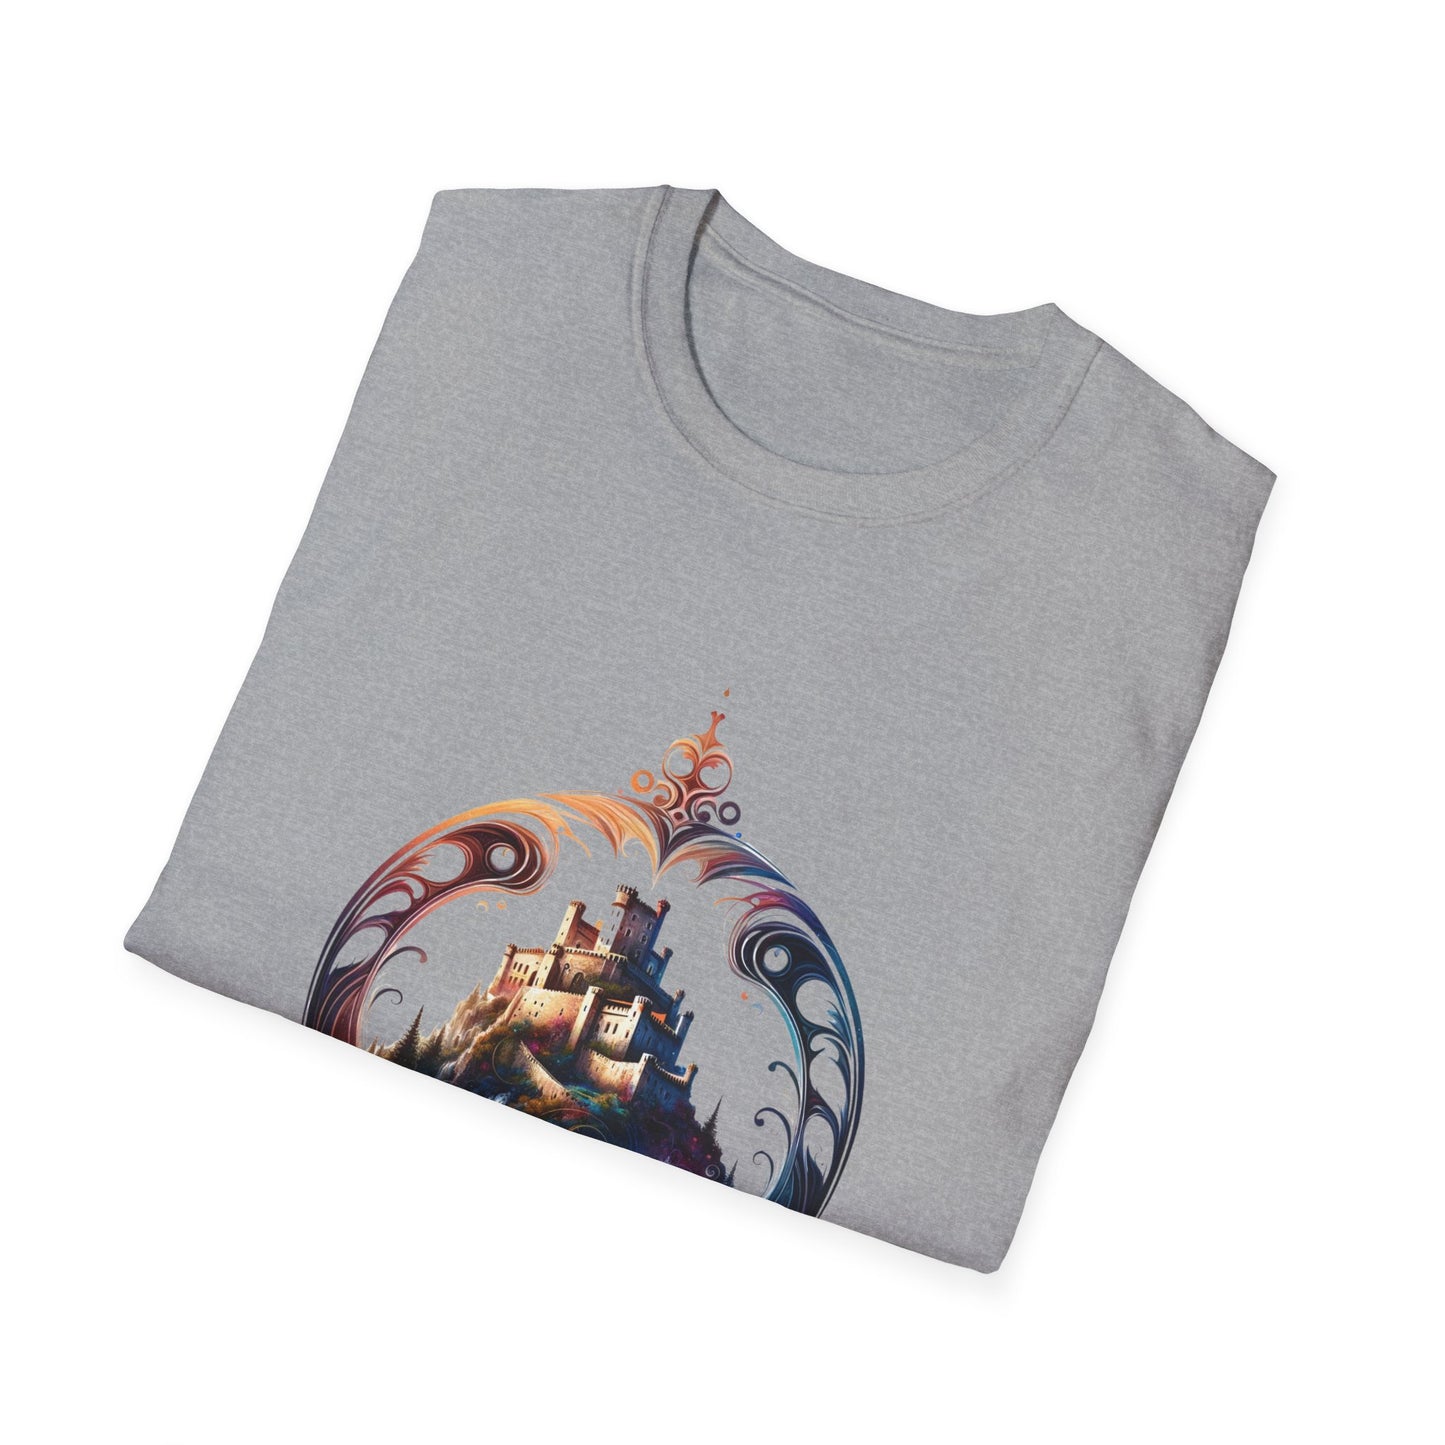 El arte se encuentra con la herencia: ¡la camiseta del castillo de Peracense!